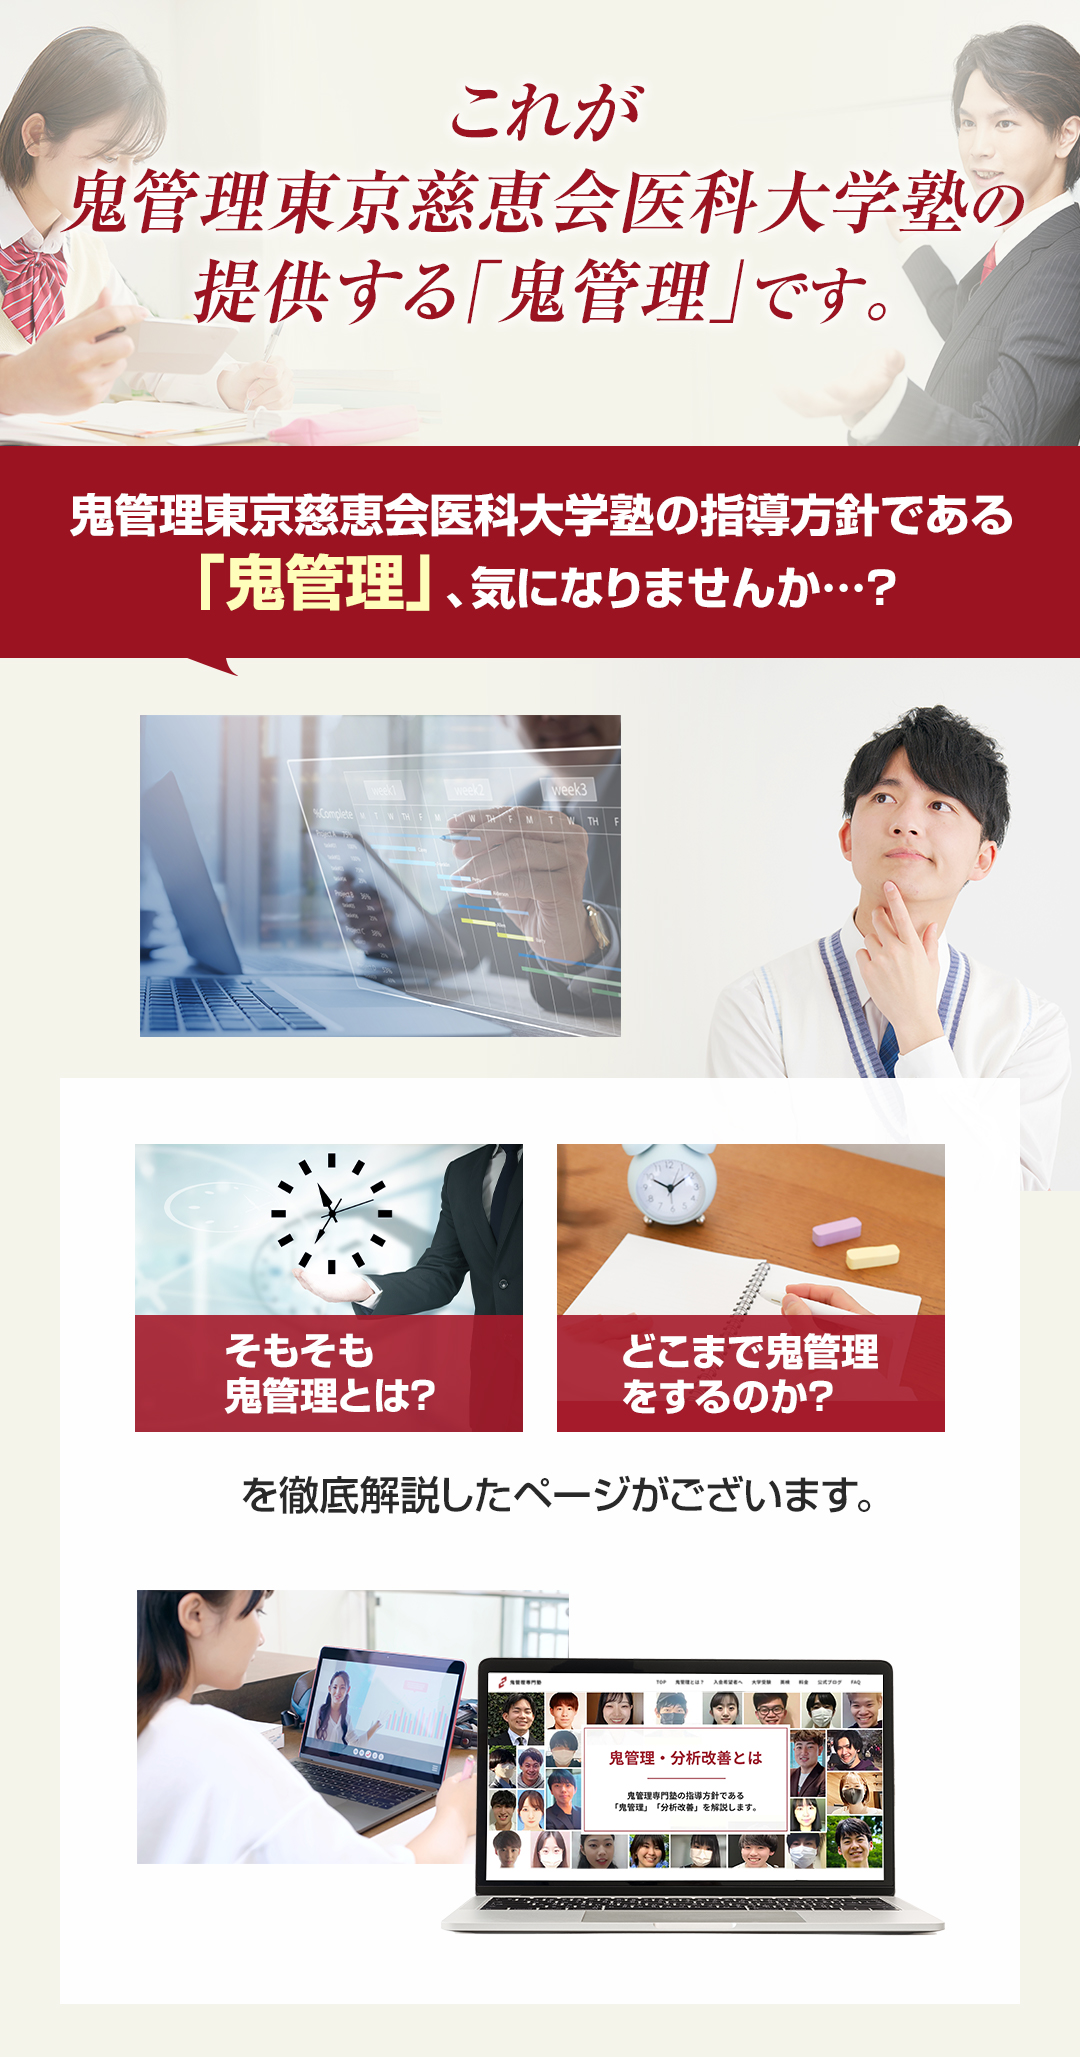 これが鬼管理東京慈恵会医科大学塾の提供する「鬼管理」です